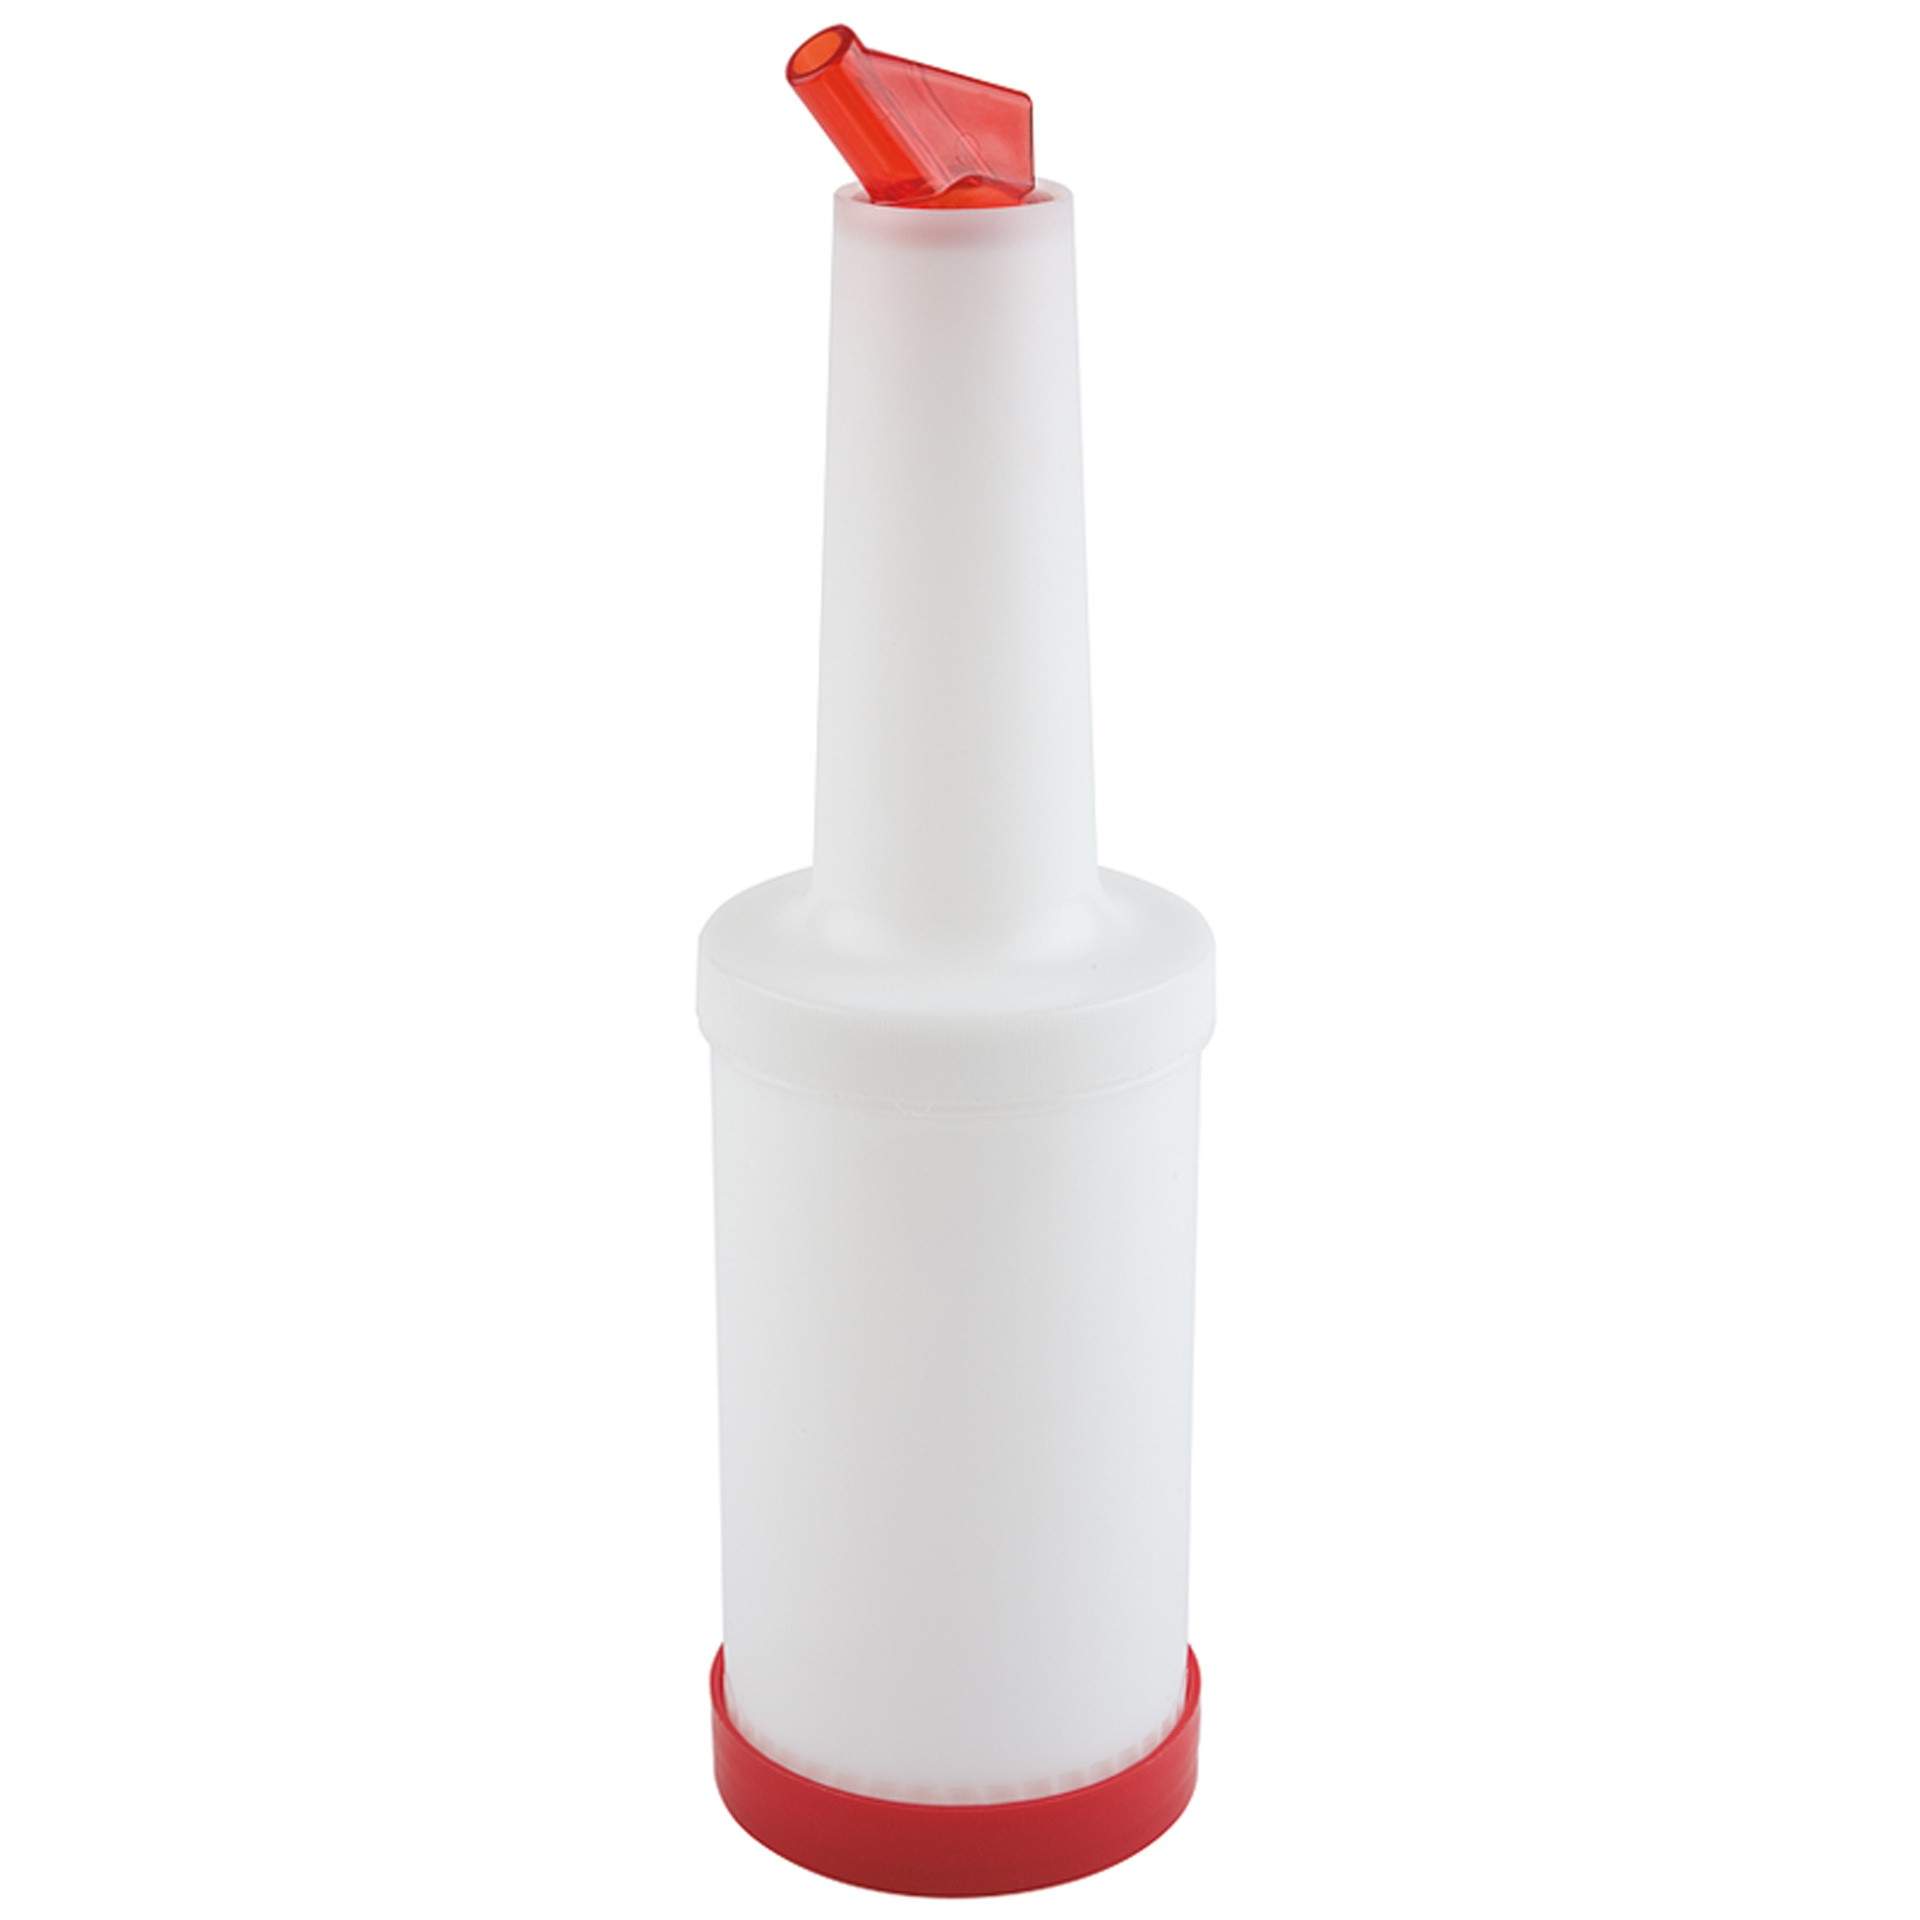 Dosier- / Vorratsflasche - 0,85 Liter - 4-teilig - rot - Abm. 33 cm - Ø 9,0 cm - Inhalt 0,85 l - Polypropylen - 93145-B